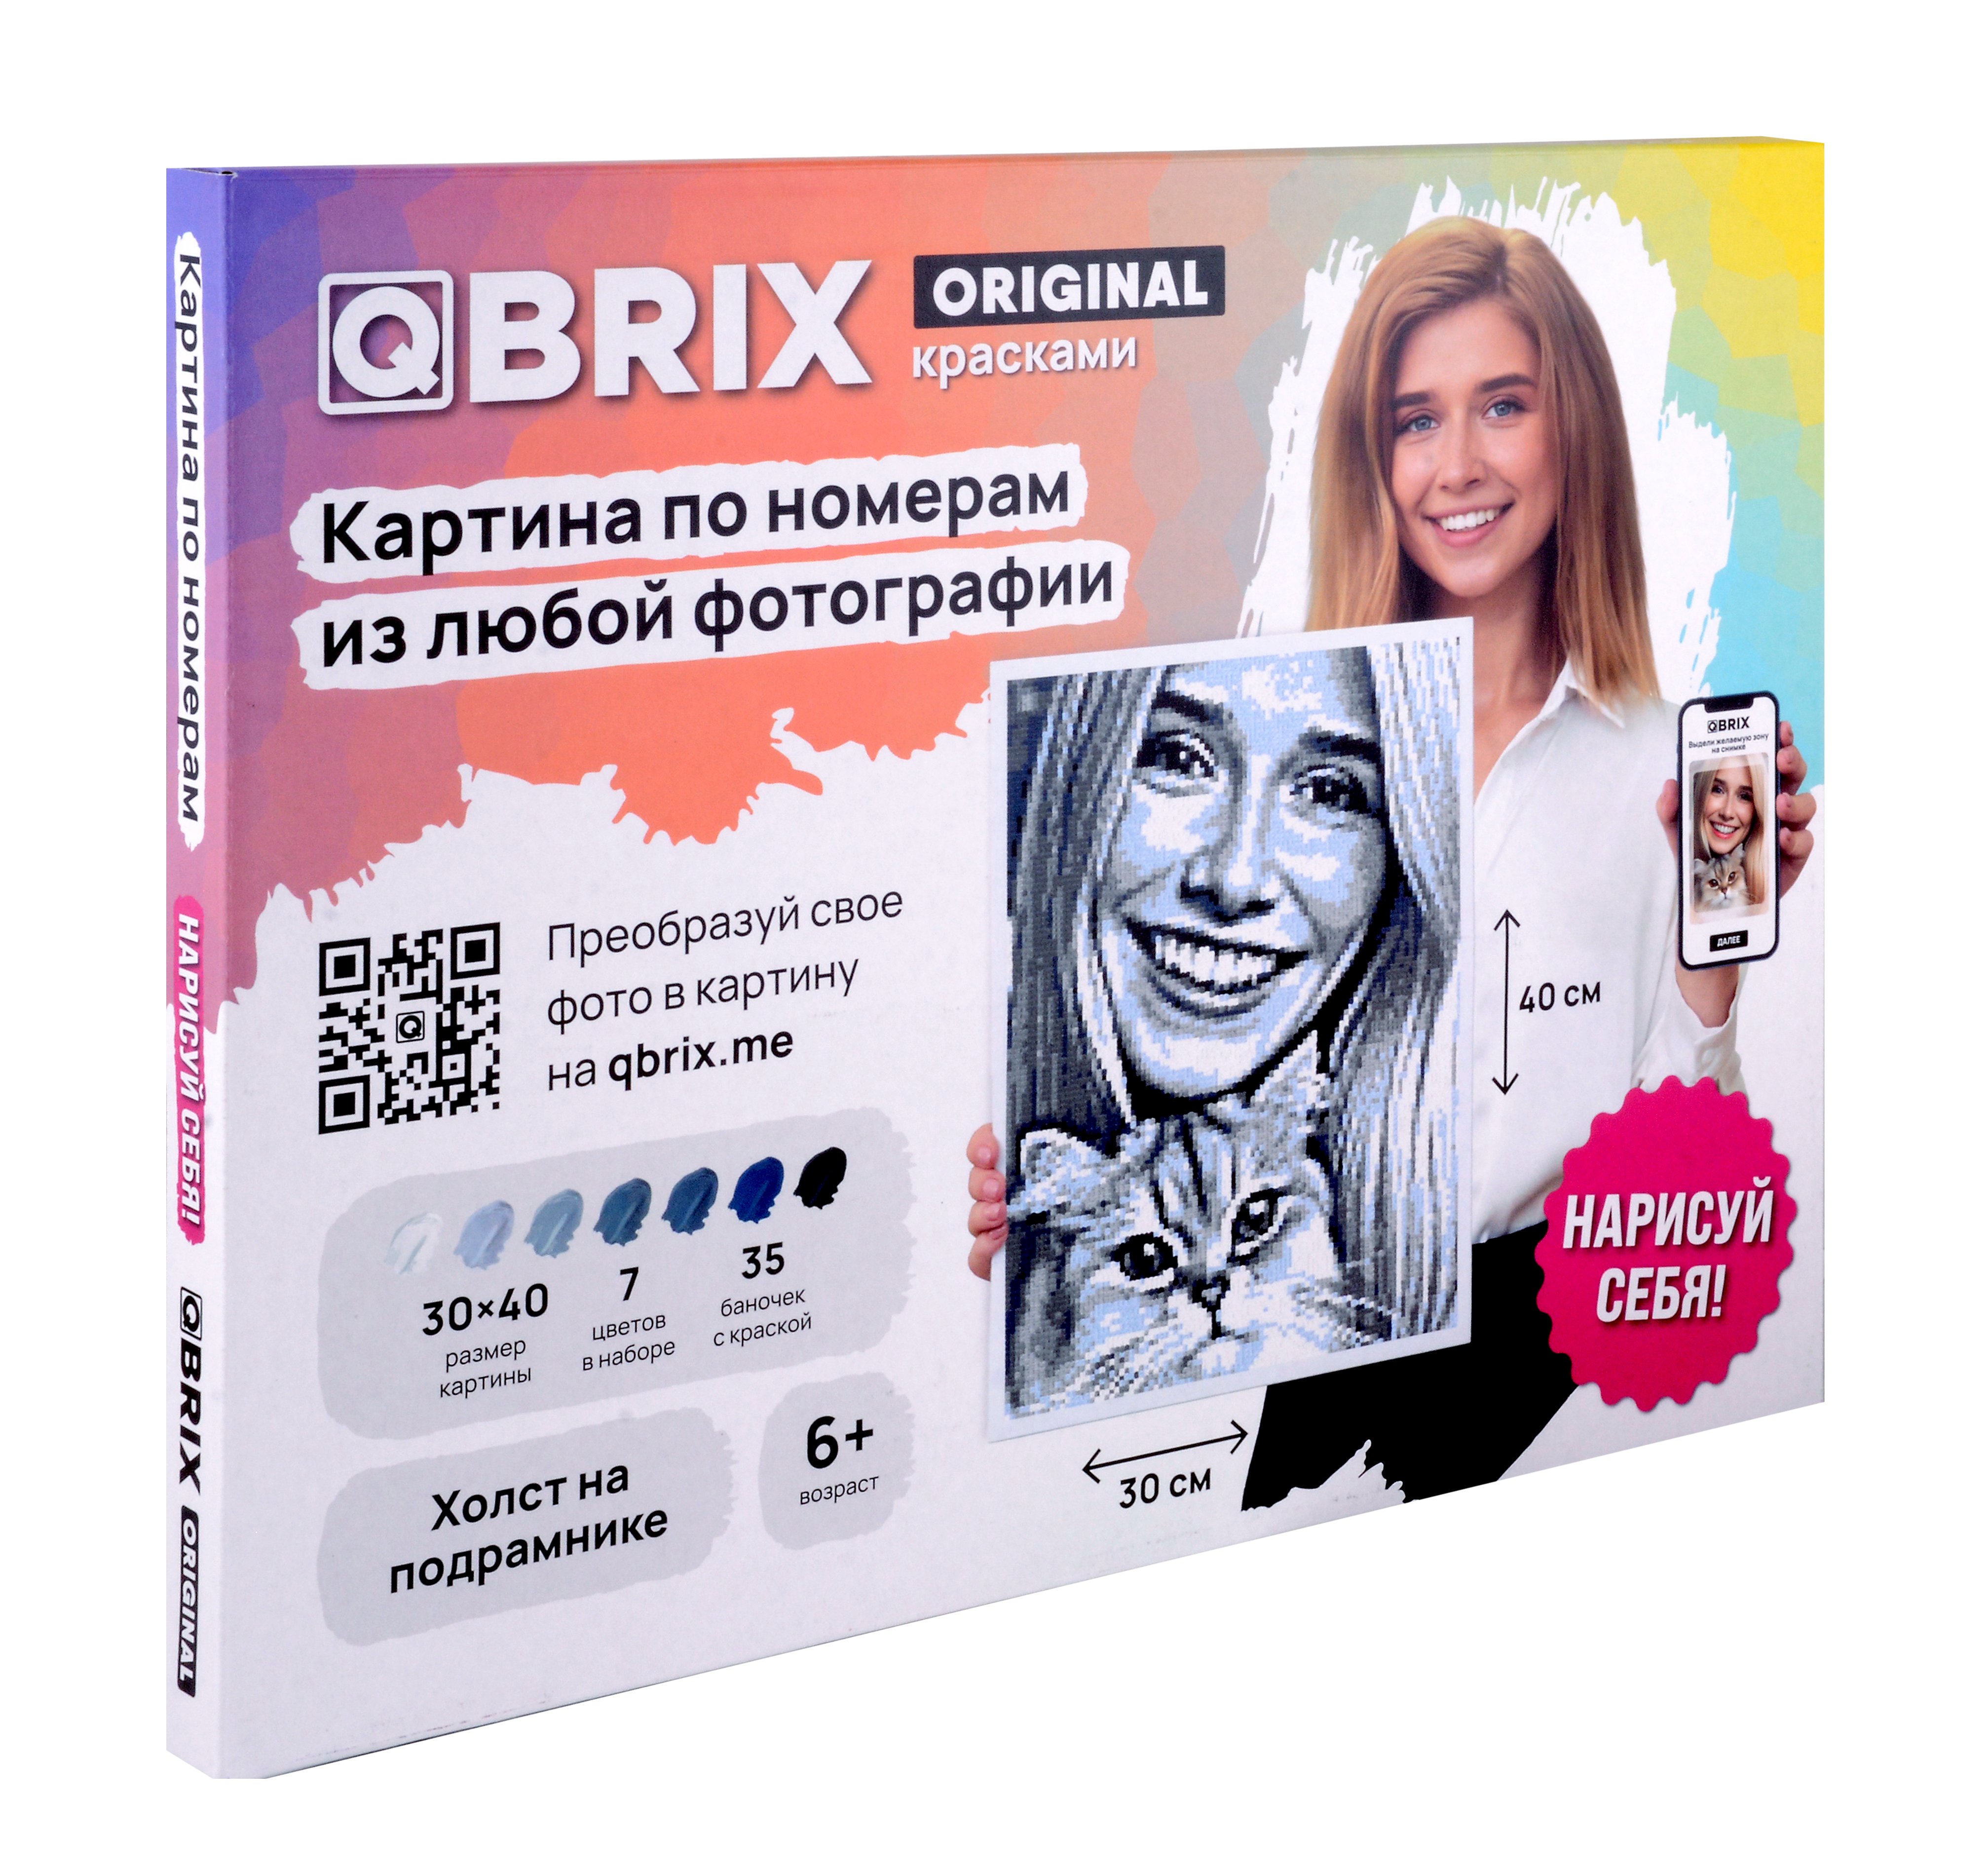       QBRIX ORIGINAL 3040